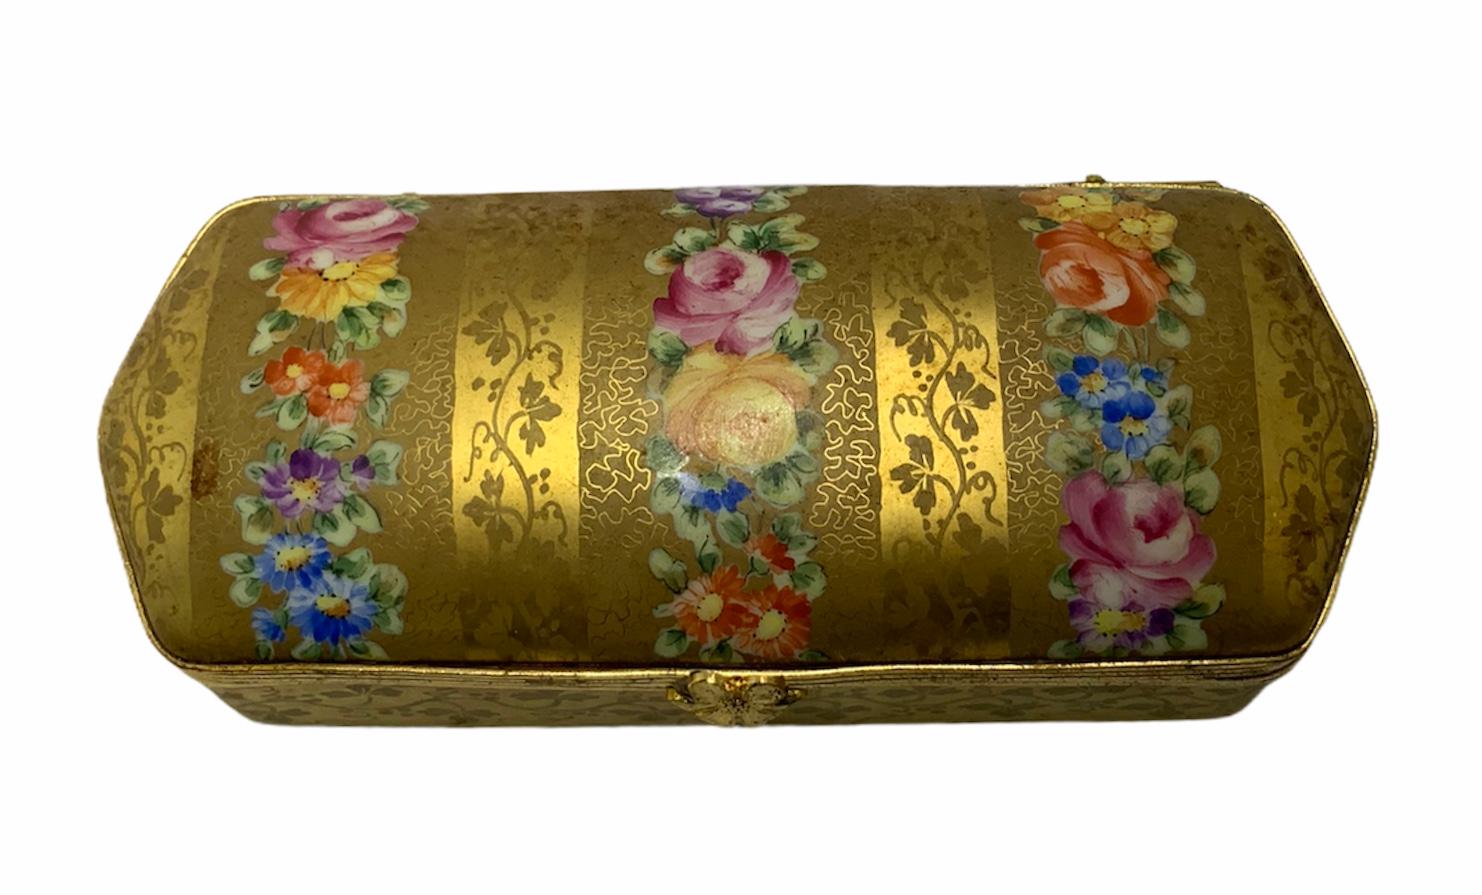 Il s'agit d'une boîte à charnière allongée, dorée et peinte à la main. Il est décoré d'une guirlande de fleurs et d'un feston de branches de feuilles de persil. À l'intérieur du couvercle, il y a une seule rose peinte à la main. C'est une excellente